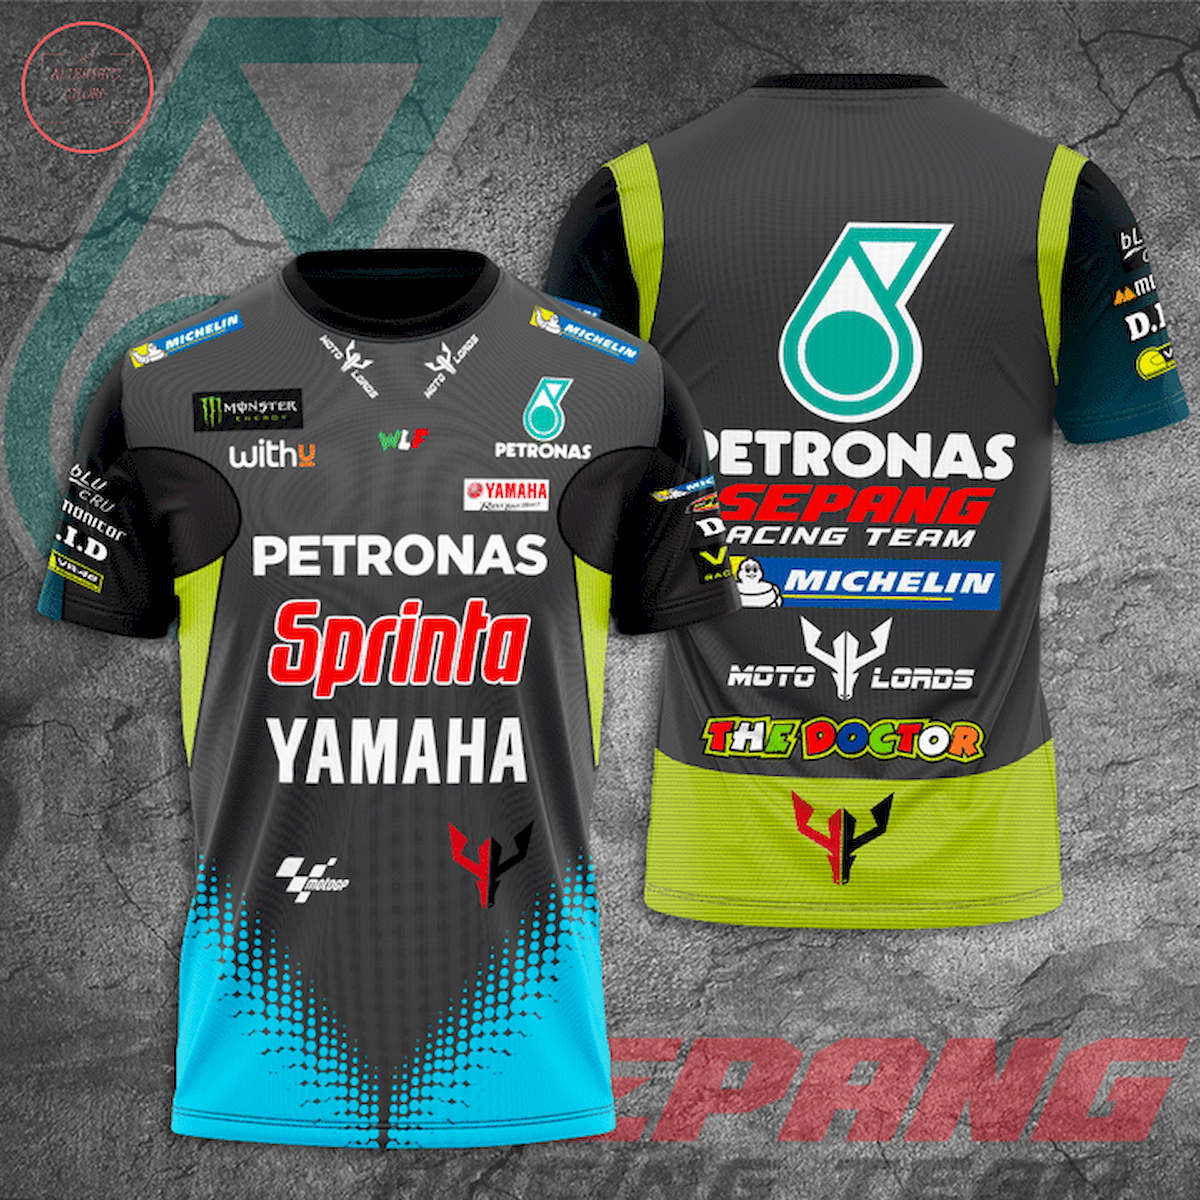 The Doctor Petronas Sepang Racing Team 3d Shirts